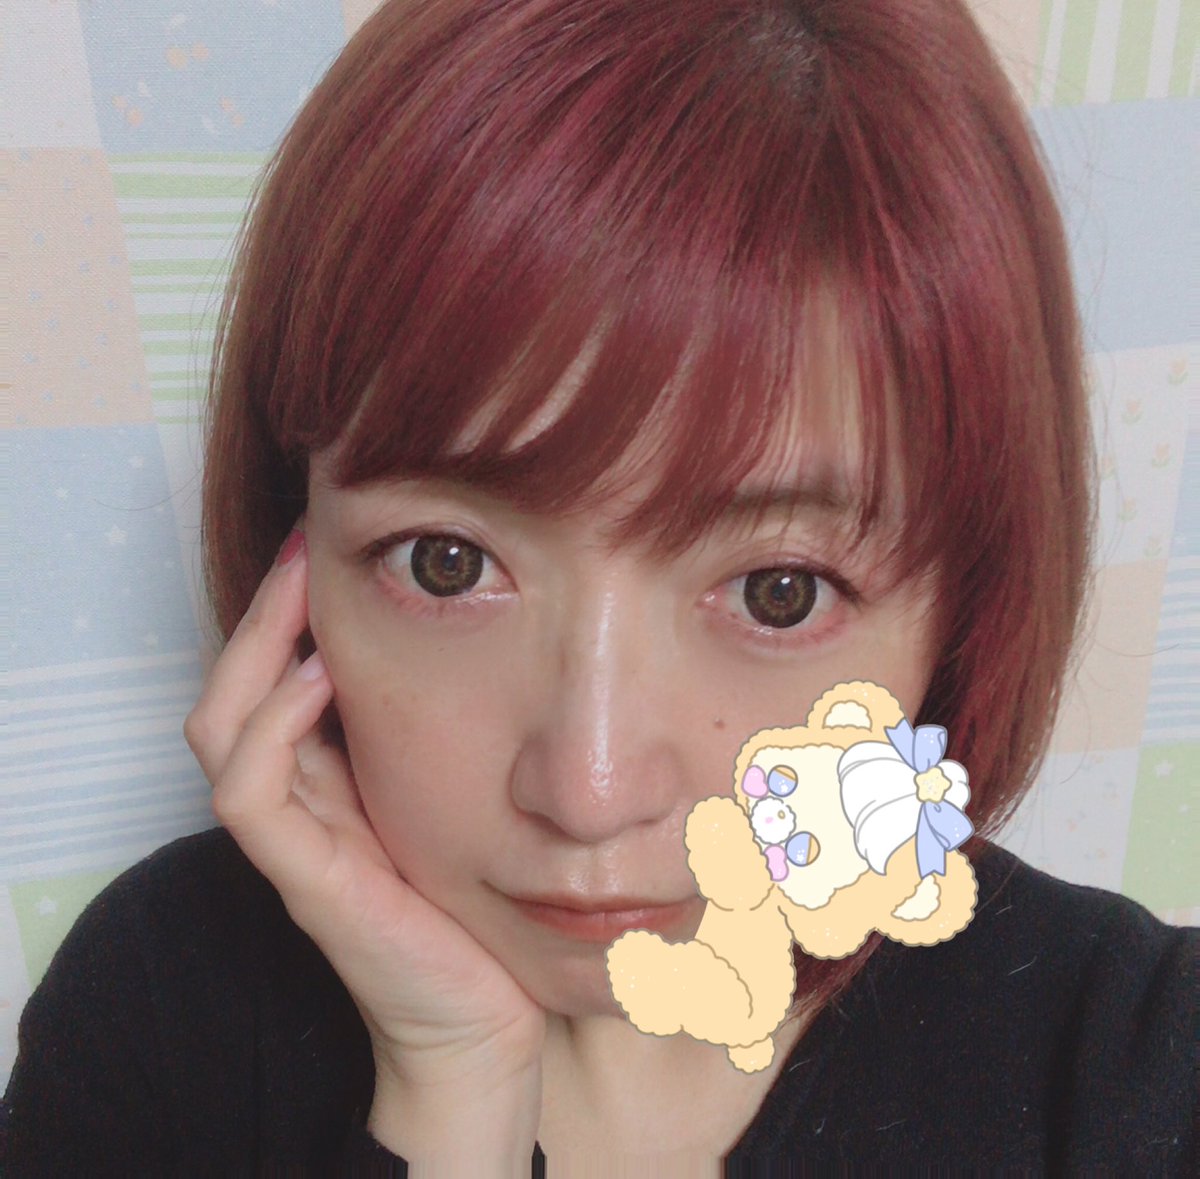 Copochan Lineスタンプ Youtube ブリーチ１回 ヘアバターのピンクとパープルで染めたら 野沢雅子さんインスパイア系の髪色になりました